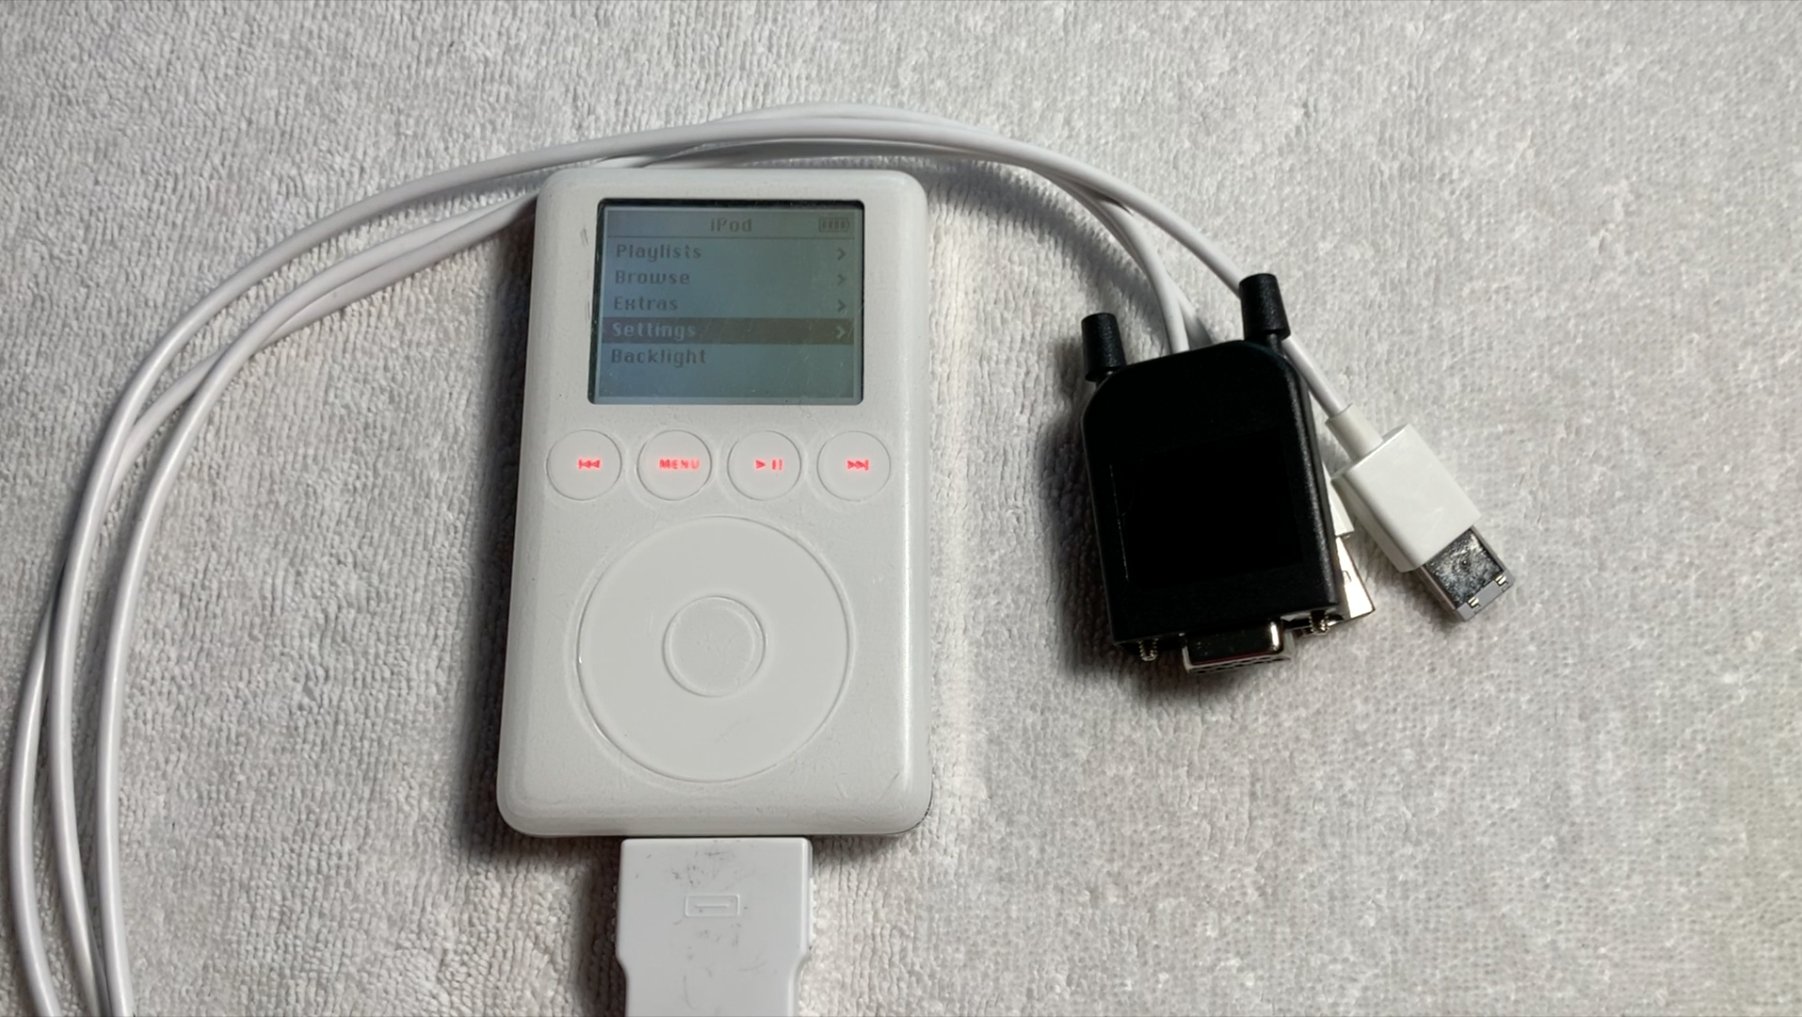 Znaleziono prototyp Apple iPod z grą będącą klonem Tetris. Nigdy nie został wydany